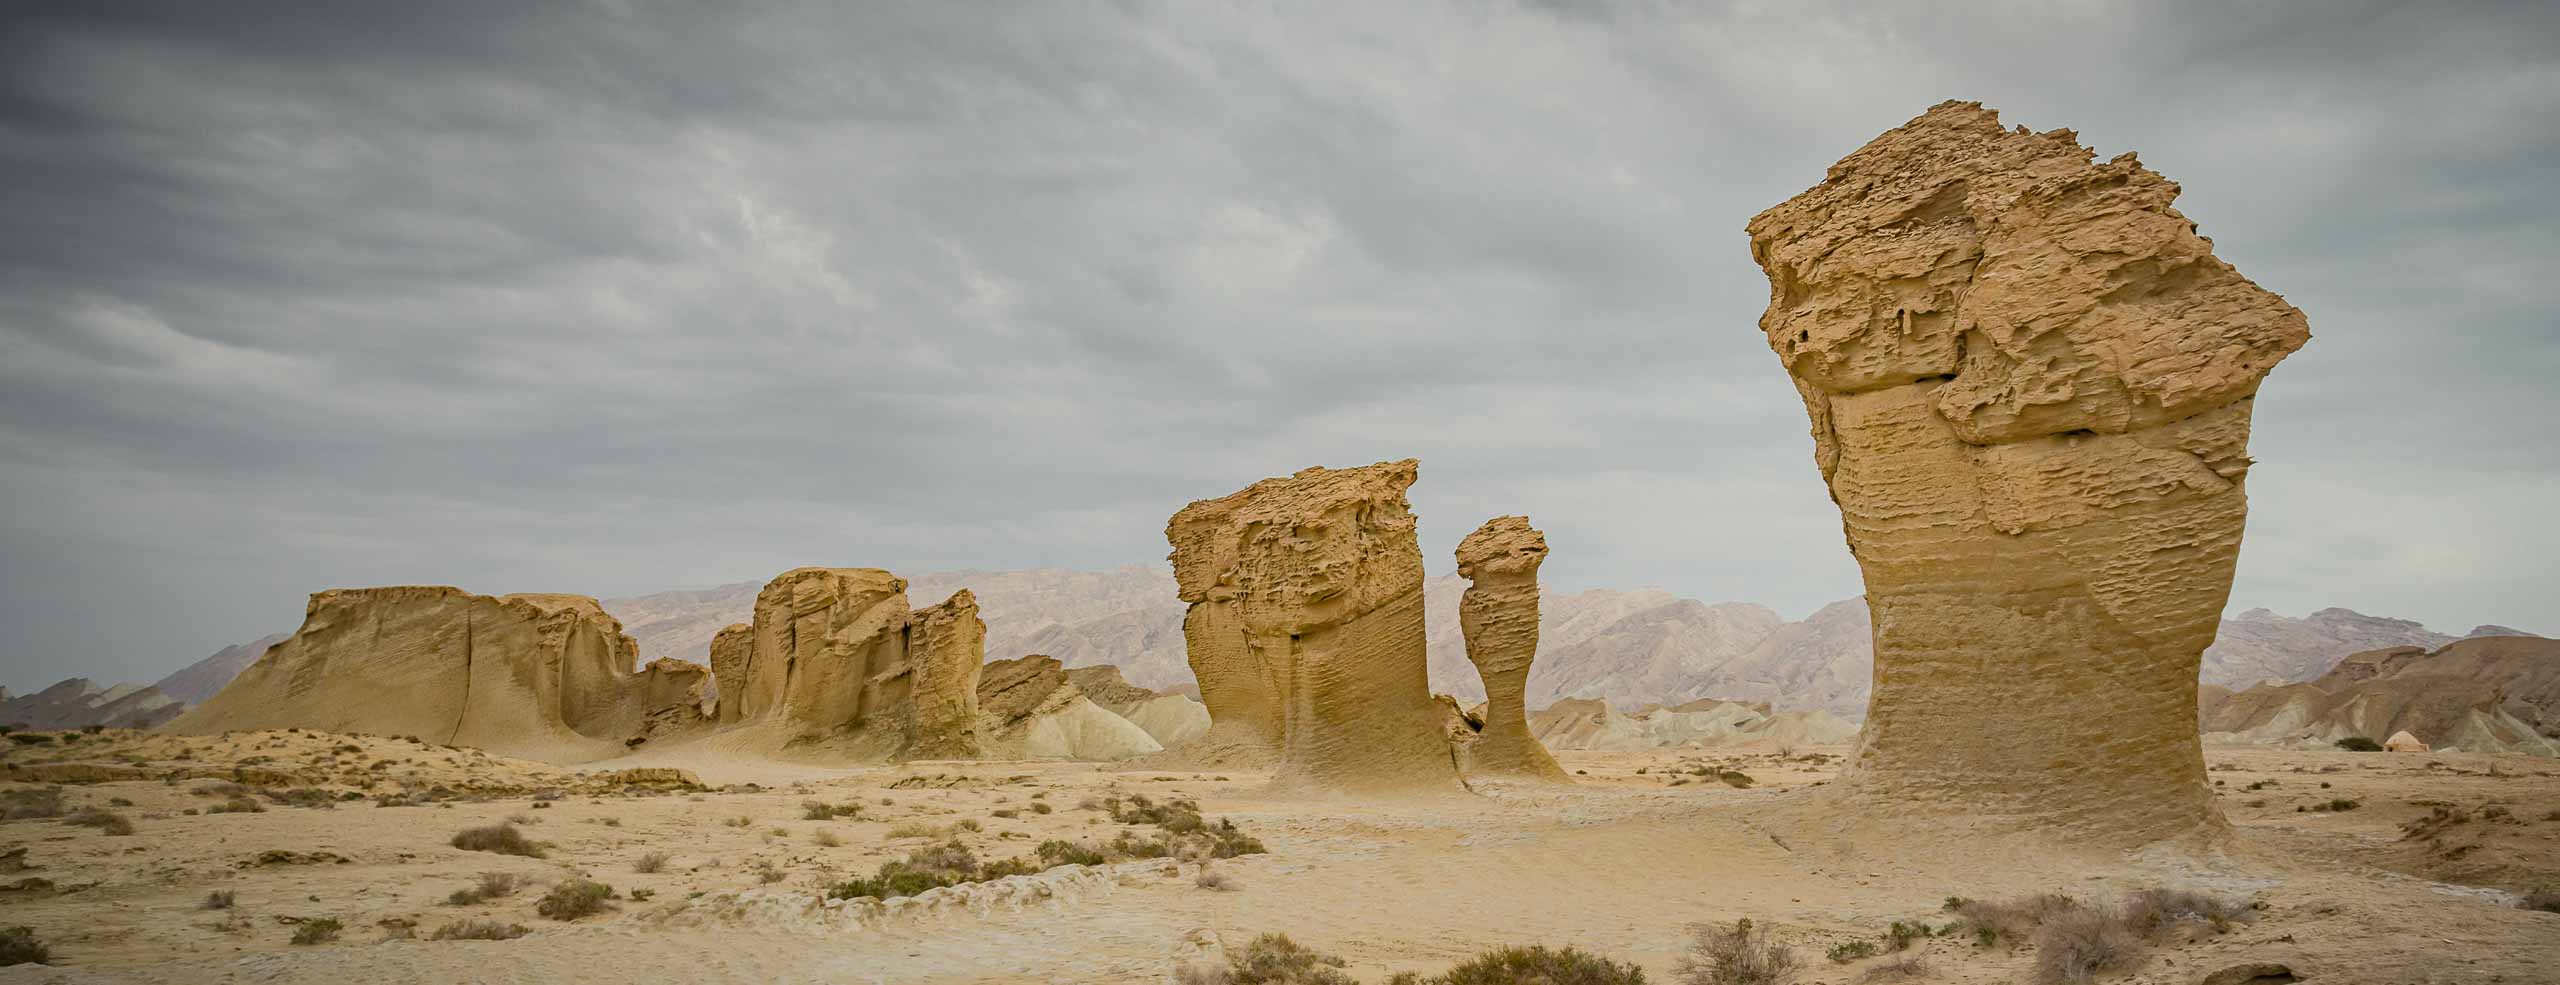 Paysage lunaire du sud de l'Iran, formation rocheuses dans un environnement désertique, près de l'île de Qeshm